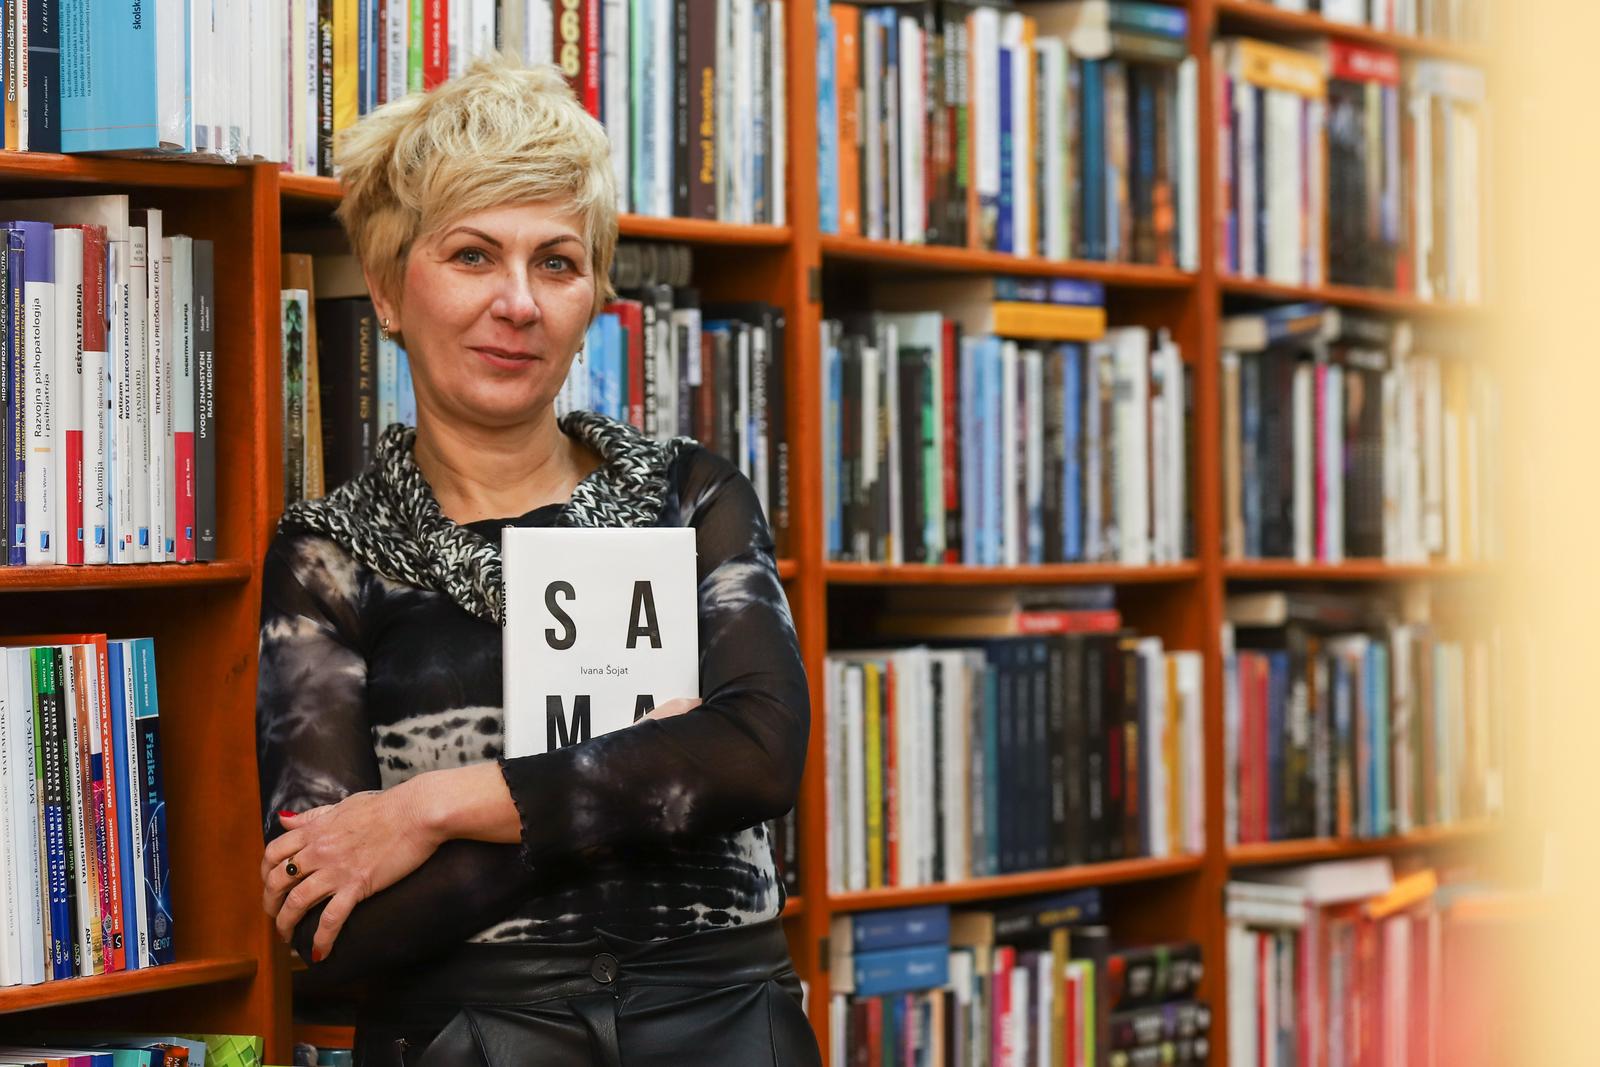 Promocija knjige Ivane Sojat 'Sama'. Photo: Dubravka Petric/PIXSELL